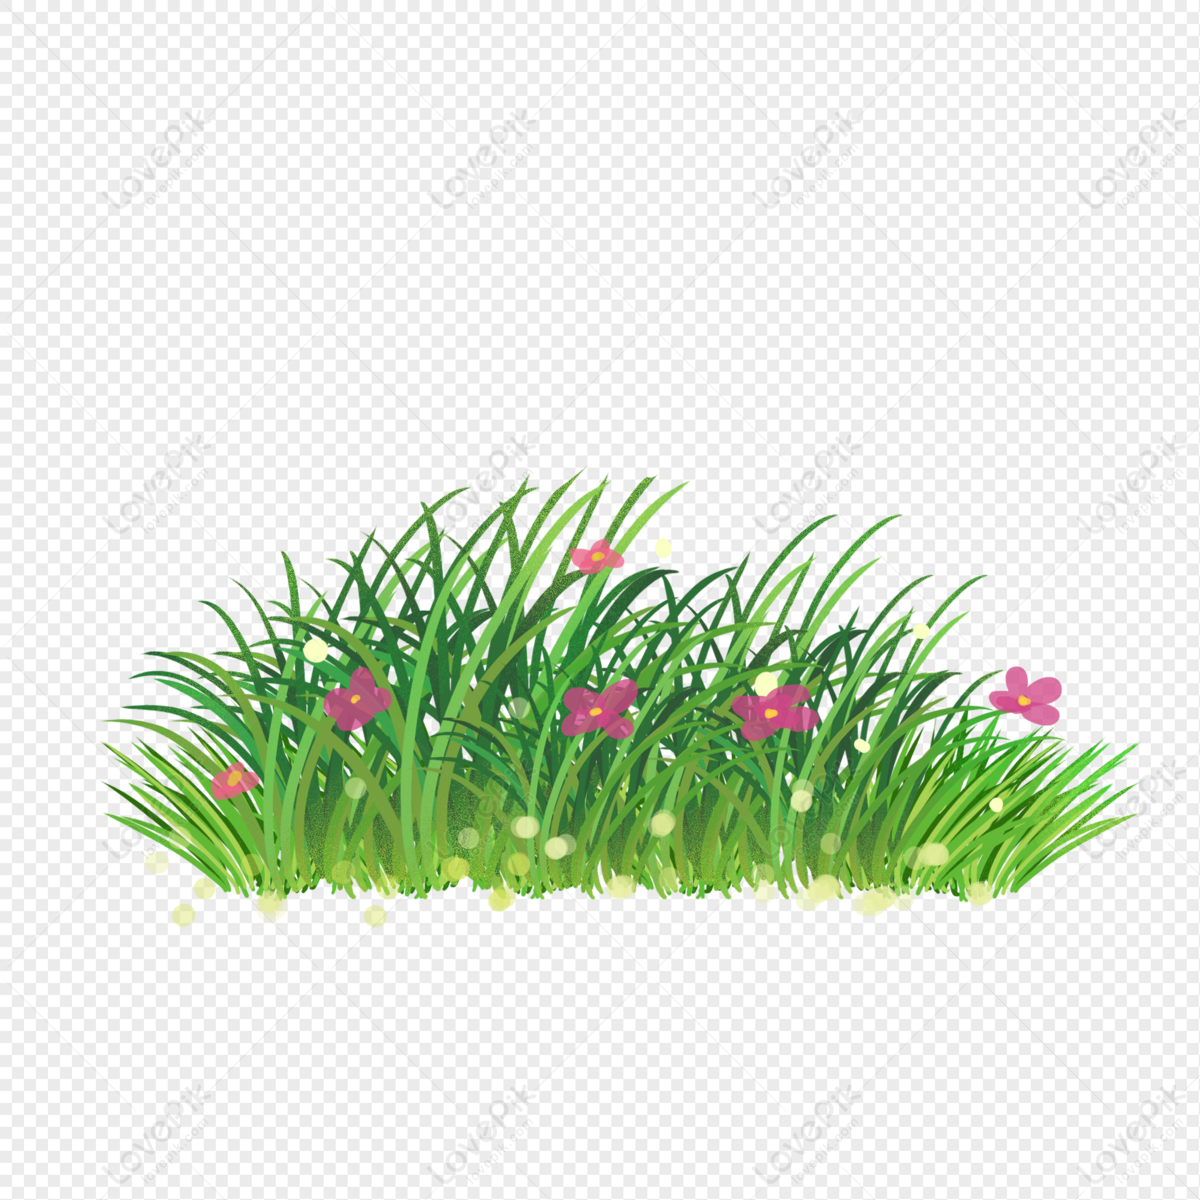 Vẽ cỏ là một nghệ thuật rất độc đáo và thú vị. Từ sự tinh tế trong nét vẽ đến màu sắc phối hợp hài hòa, các bức tranh vẽ cỏ luôn mang lại cho người xem sự yên bình và thanh thản.